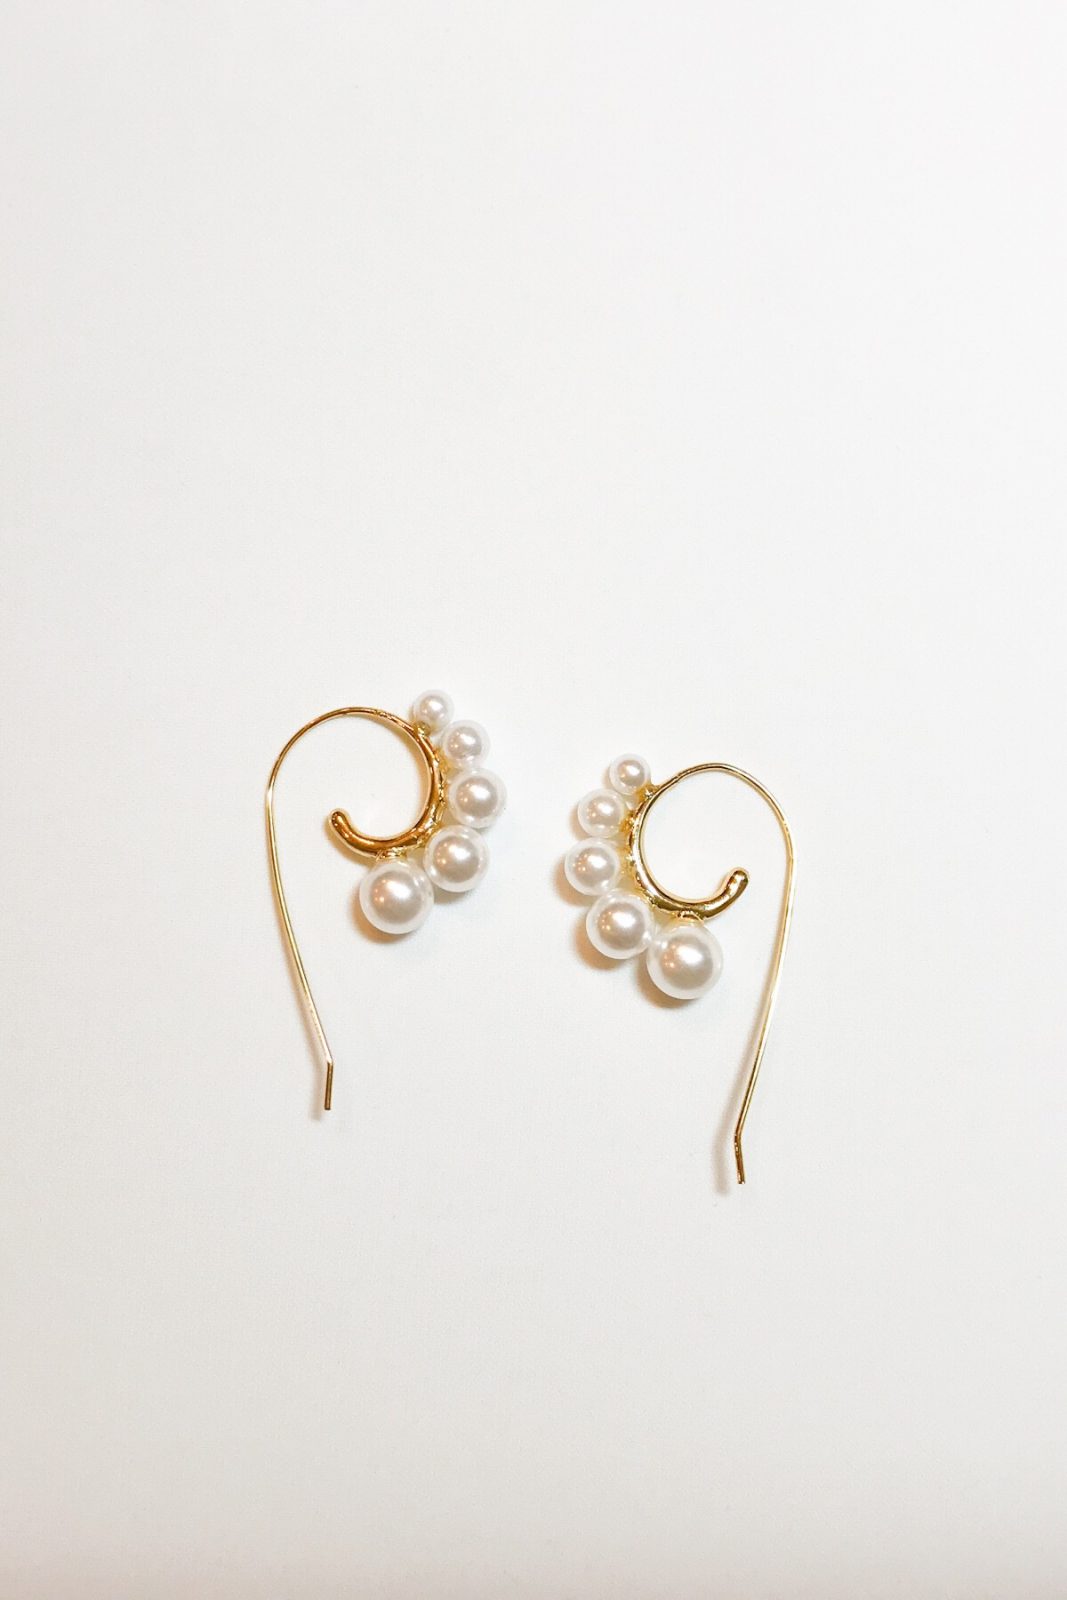 SKYE modern minimalist women fashion accessories Amour Pearl Earrings 12